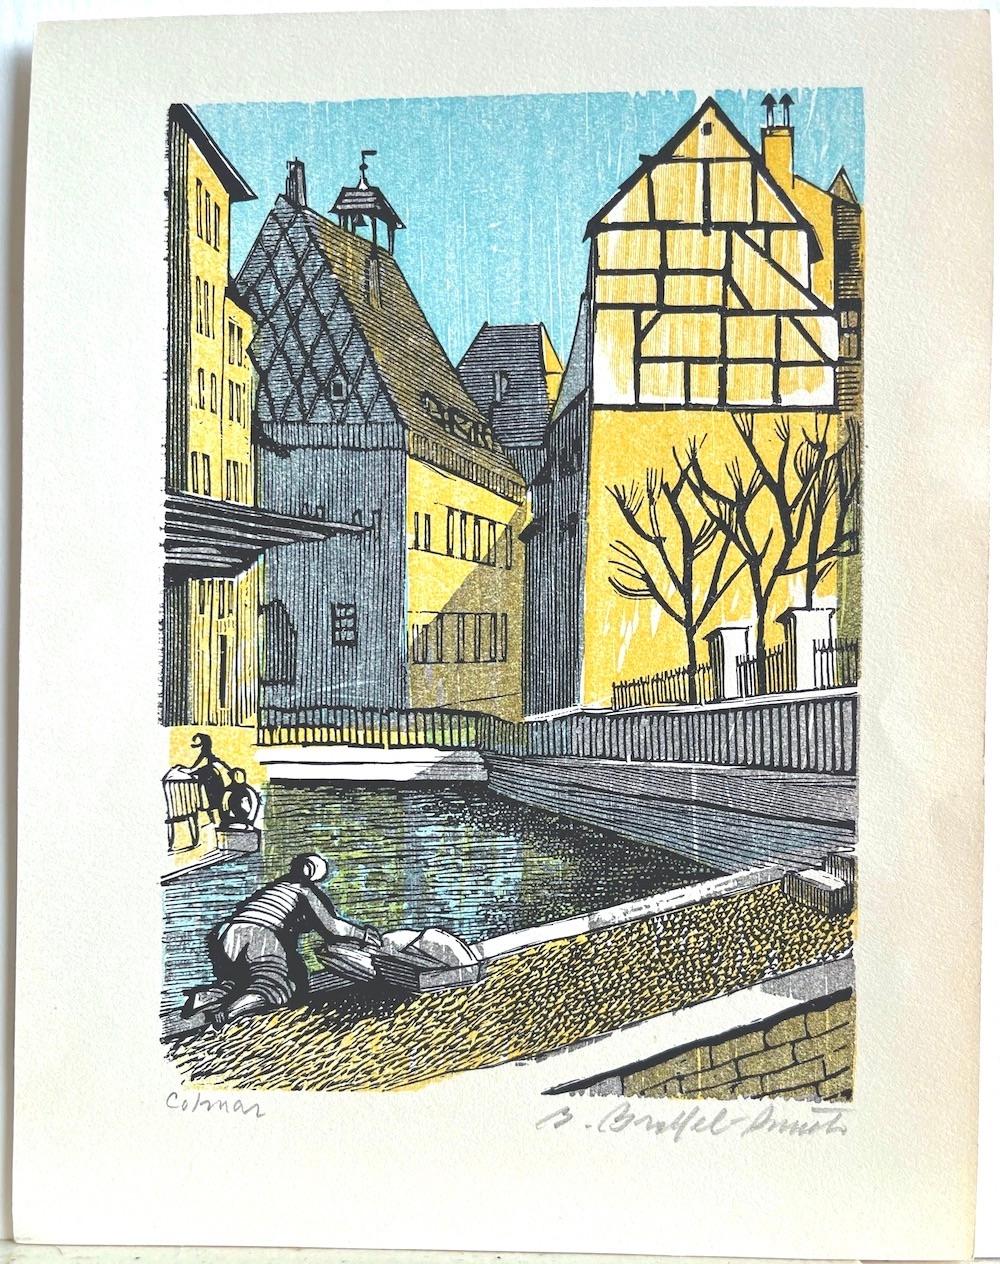 COLMAR est une gravure sur bois originale de l'artiste américain Bernard Brussel-Smith, imprimée à la main à l'encre jaune, bleu clair et noire. COLMAR dépeint un village français pittoresque avec des maisons médiévales à colombages, un canal et des